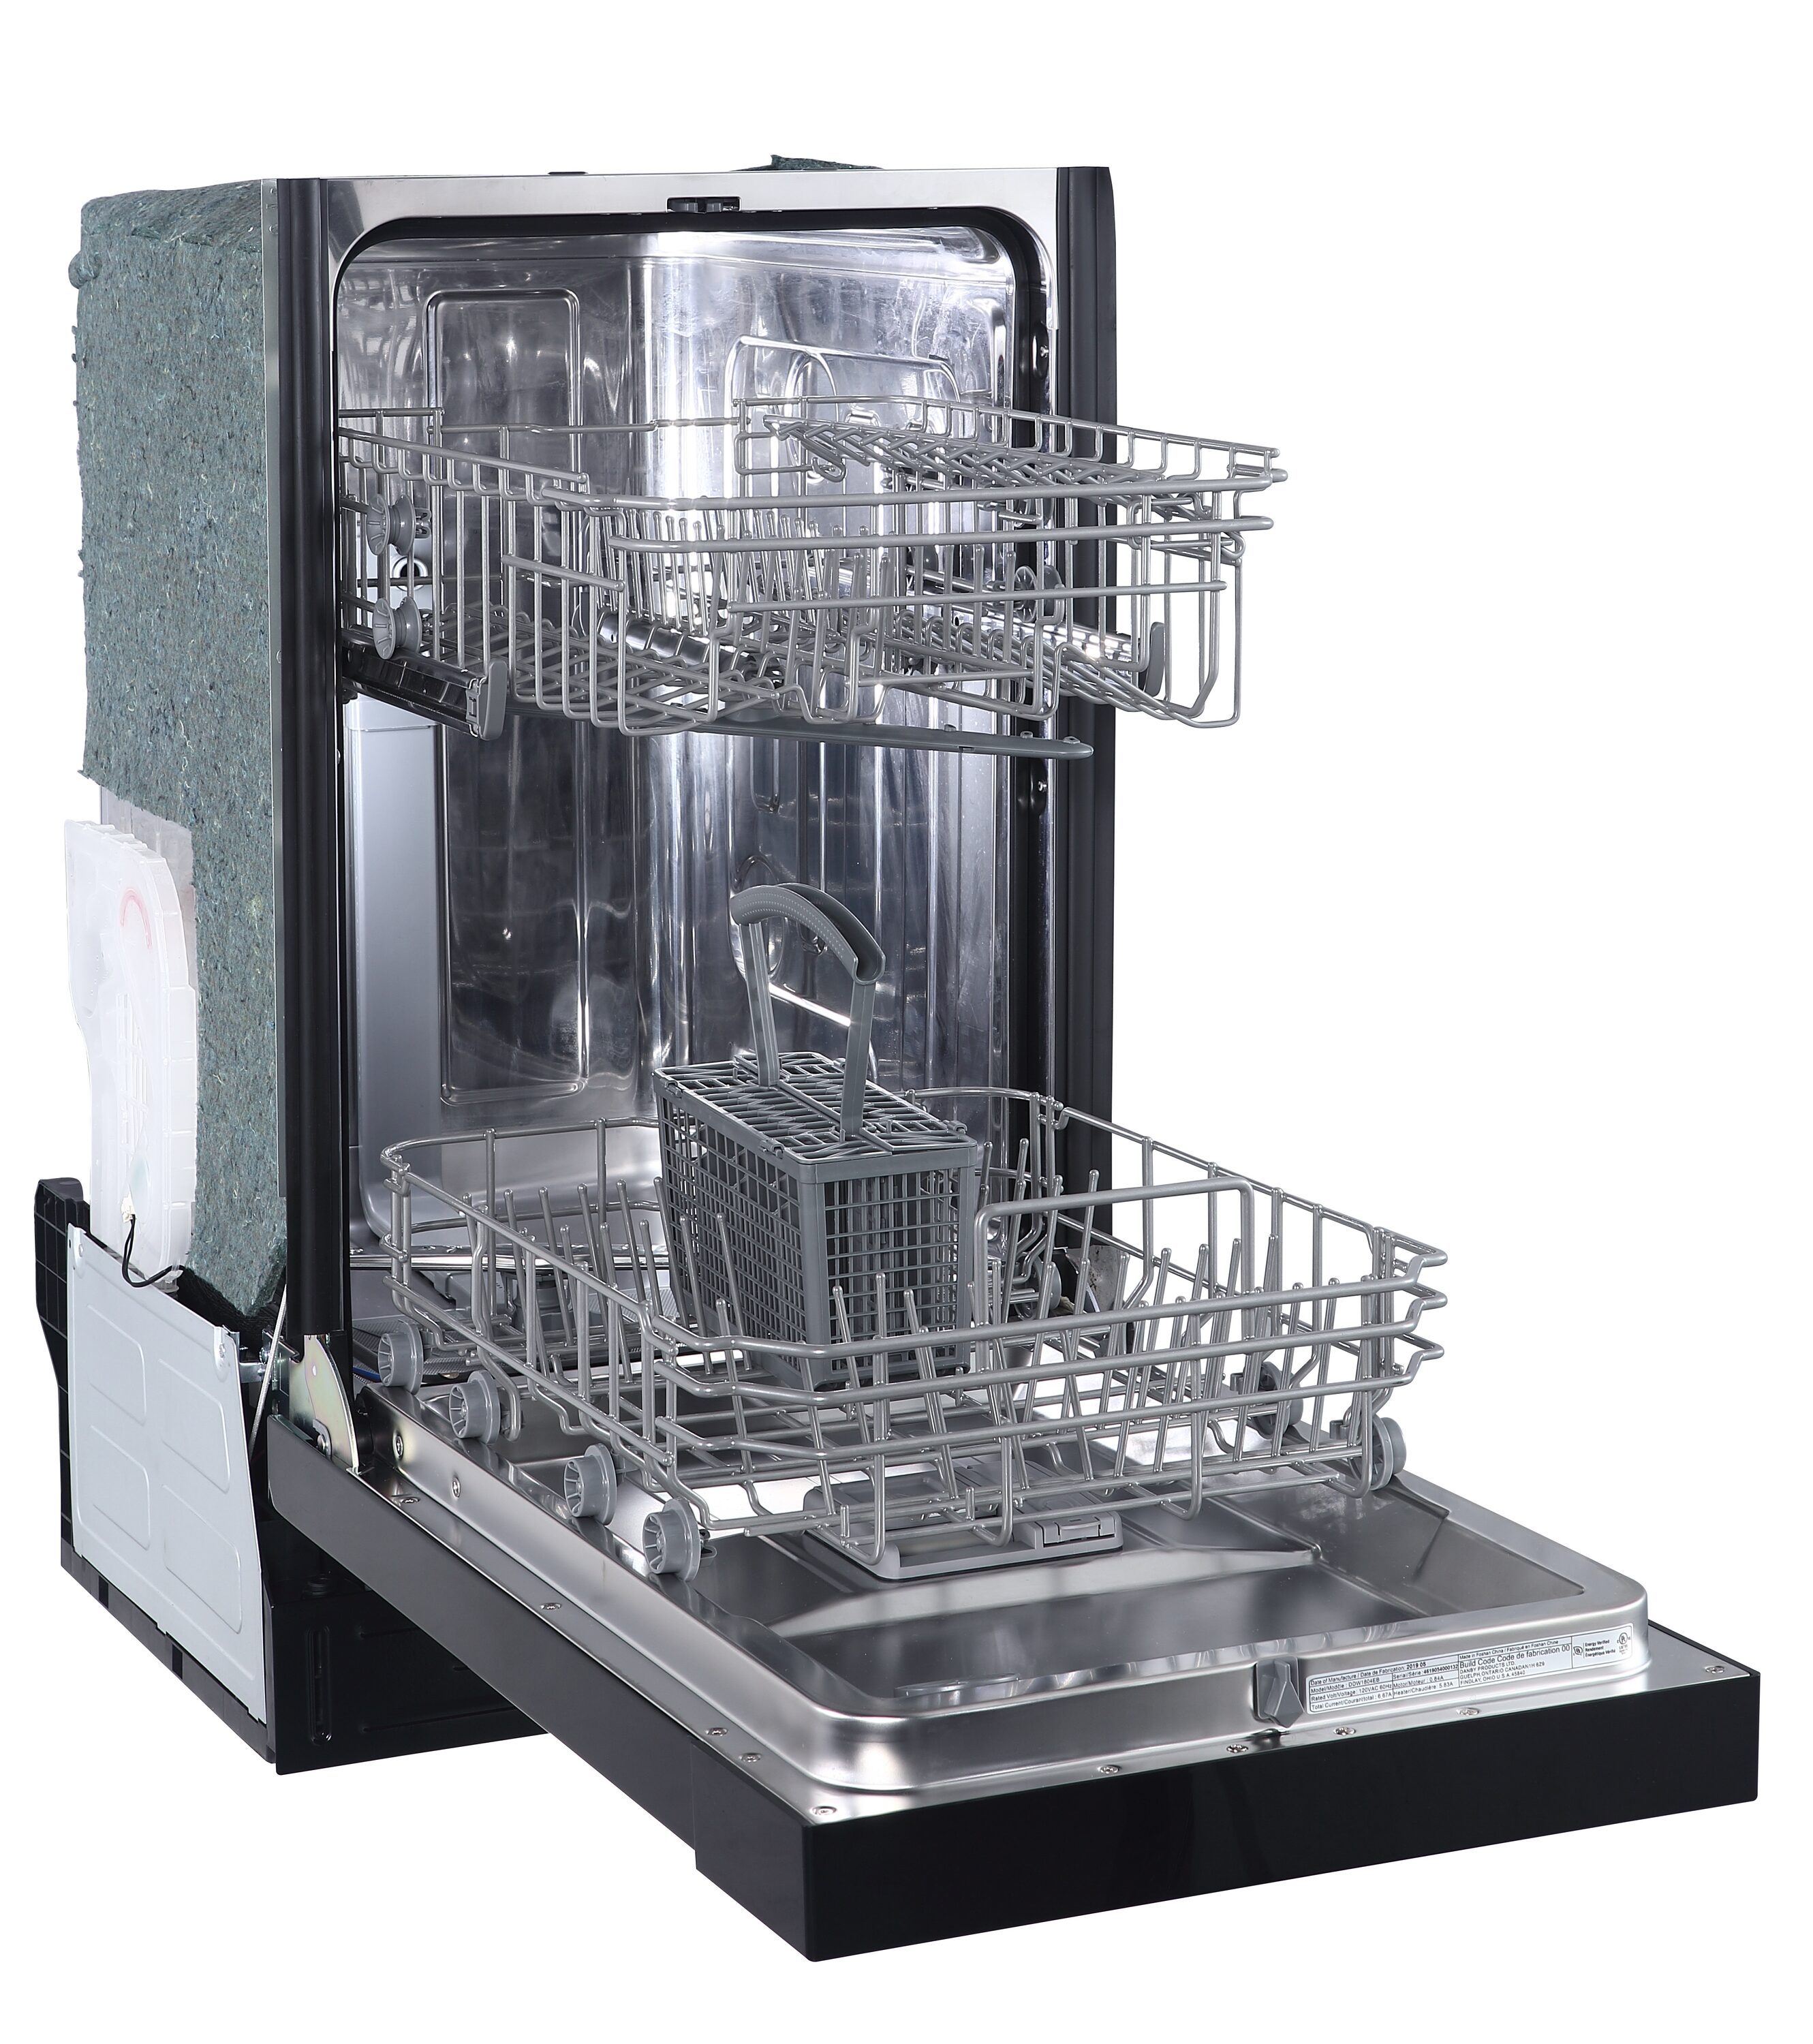 Danby 24 Wide Built-in Dishwasher in Stainless Steel - DDW2404EBSS